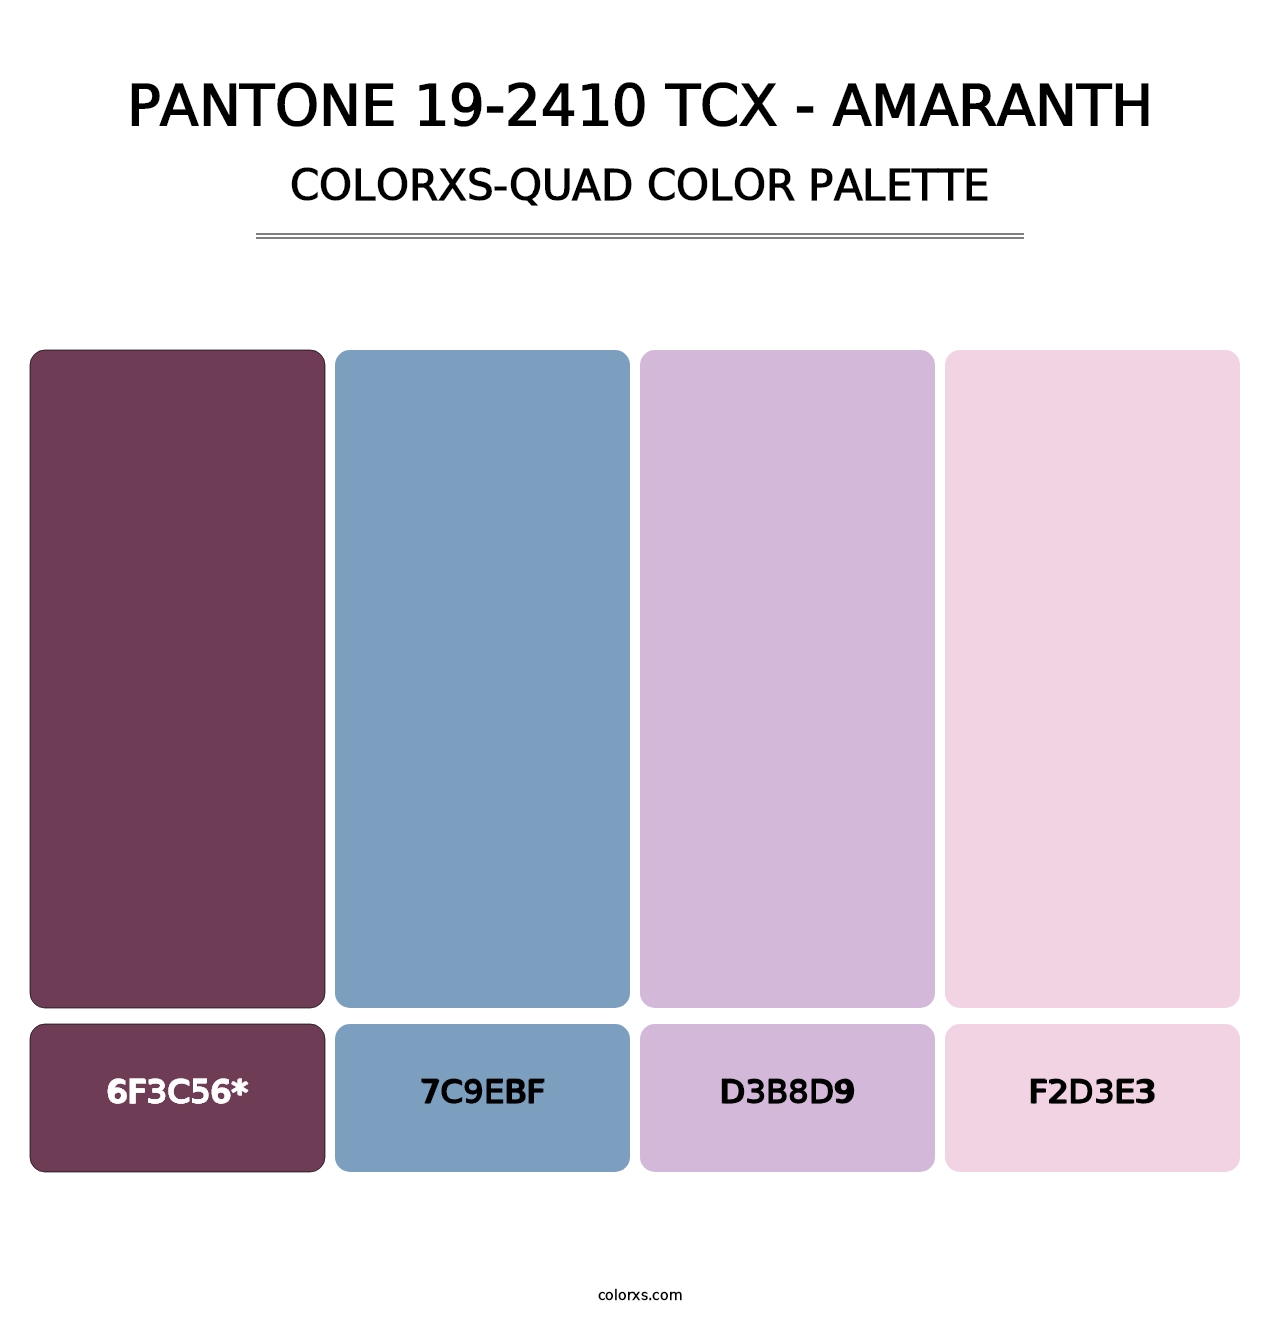 PANTONE 19-2410 TCX - Amaranth - Colorxs Quad Palette